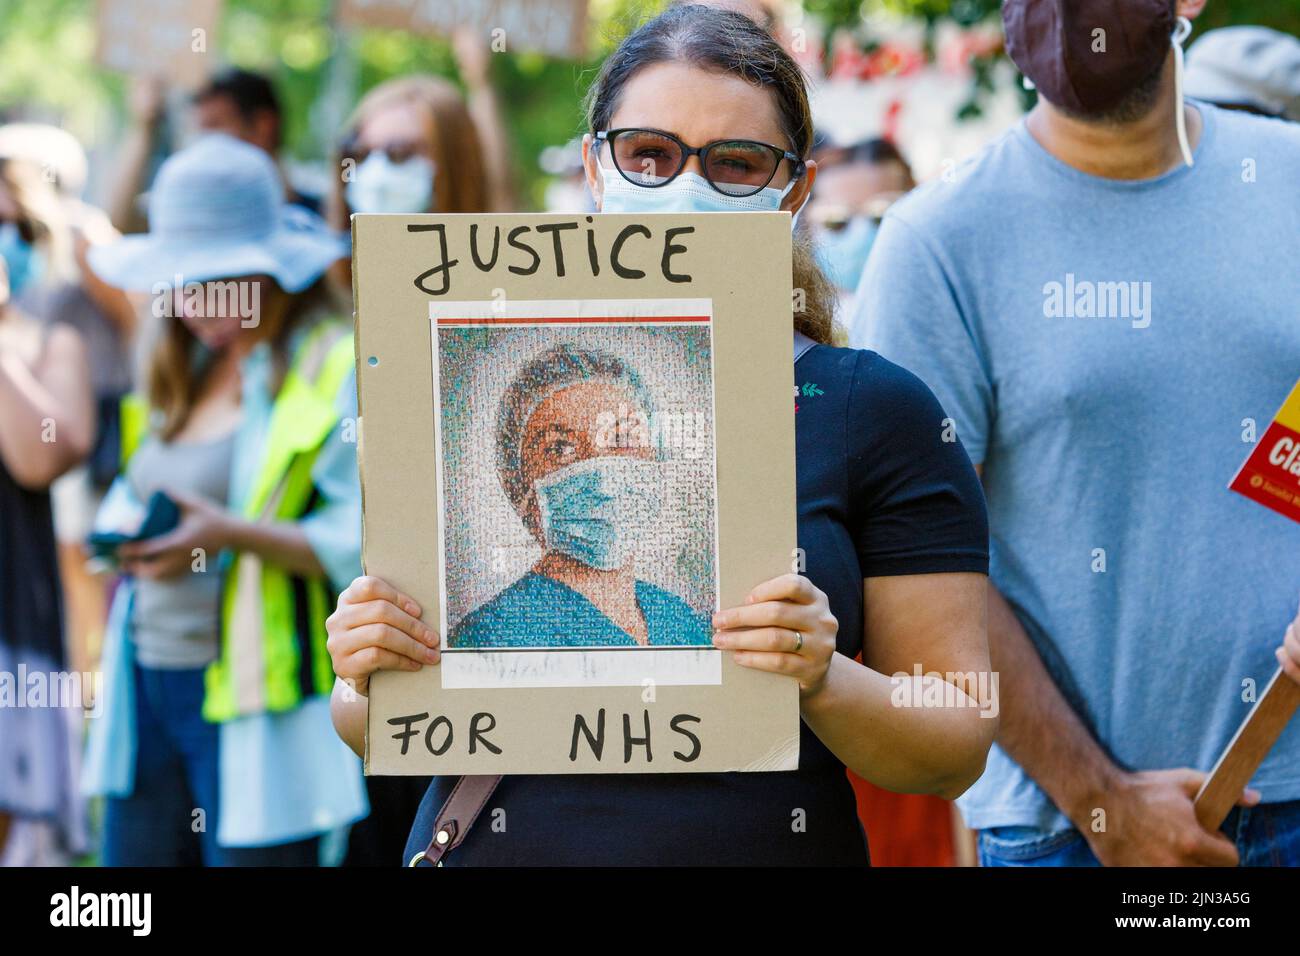 Plakat mit Protestierenden sind abgebildet, während sie an einer Demonstration und protestmarsch der NHS-Arbeiter ‘Pay Justice’ in Bristol, 8th. August 2020, teilnehmen Stockfoto